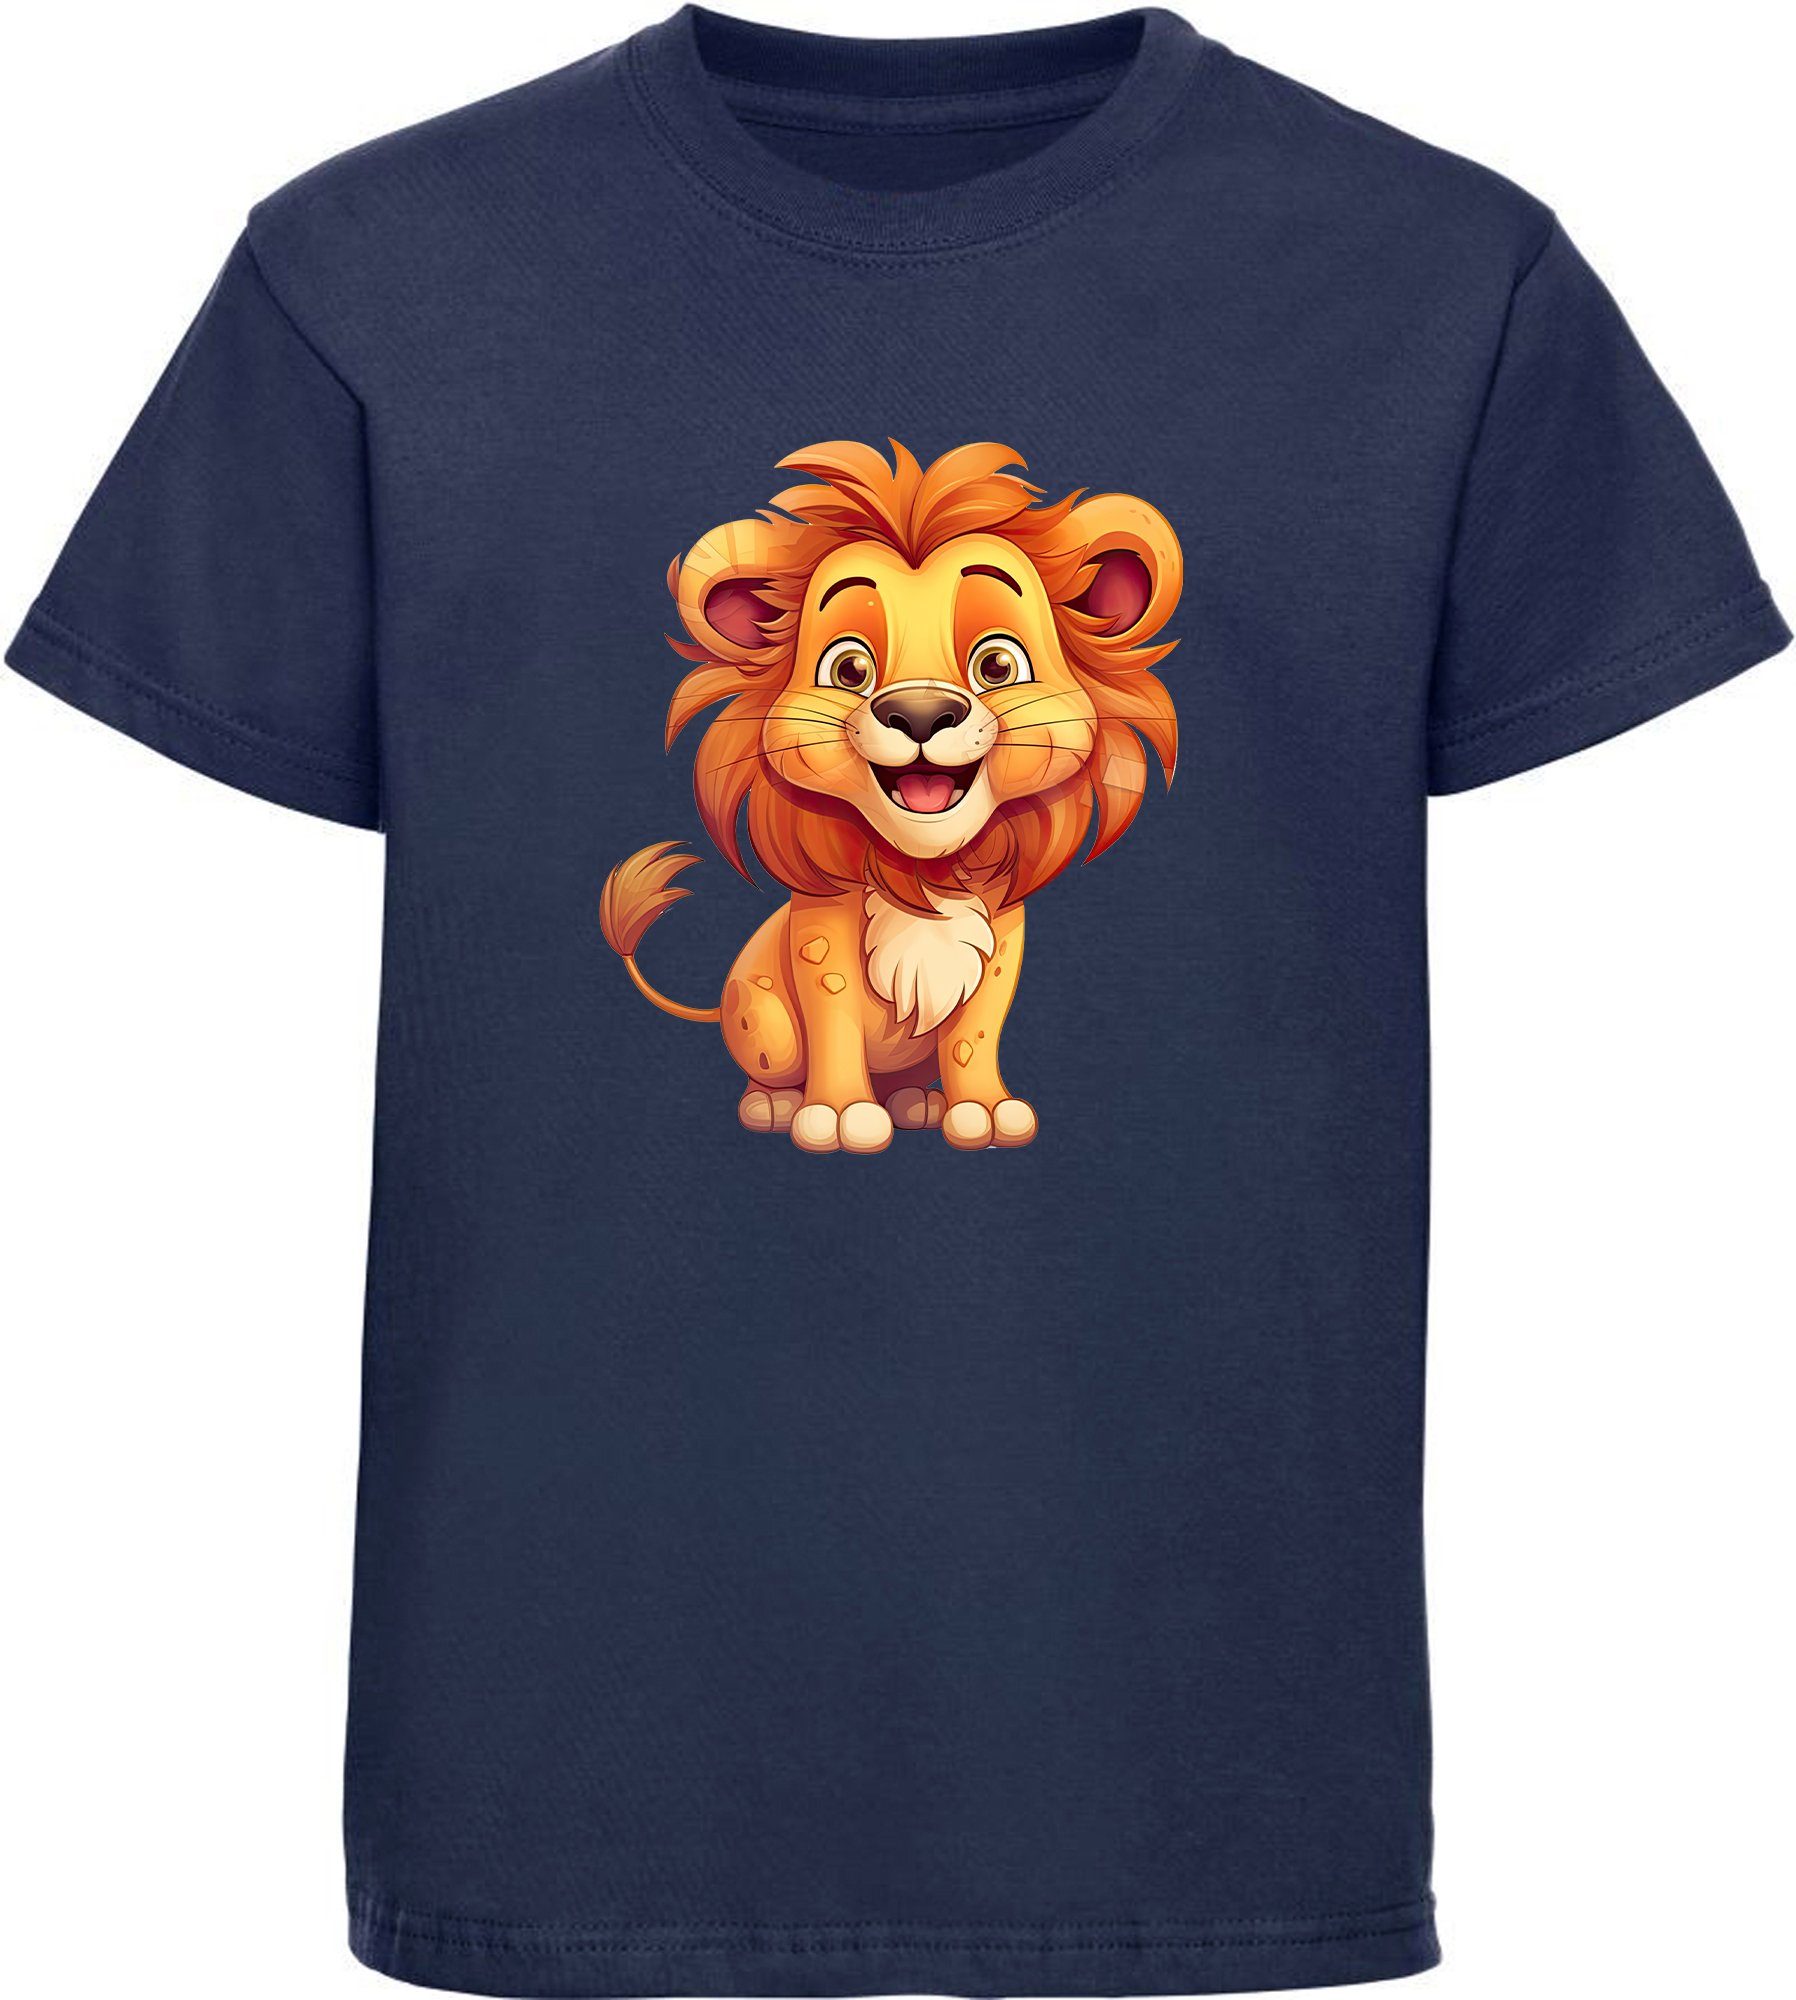 MyDesign24 T-Shirt Kinder Wildtier Print Shirt bedruckt - Baby Löwe Baumwollshirt mit Aufdruck, i275 navy blau